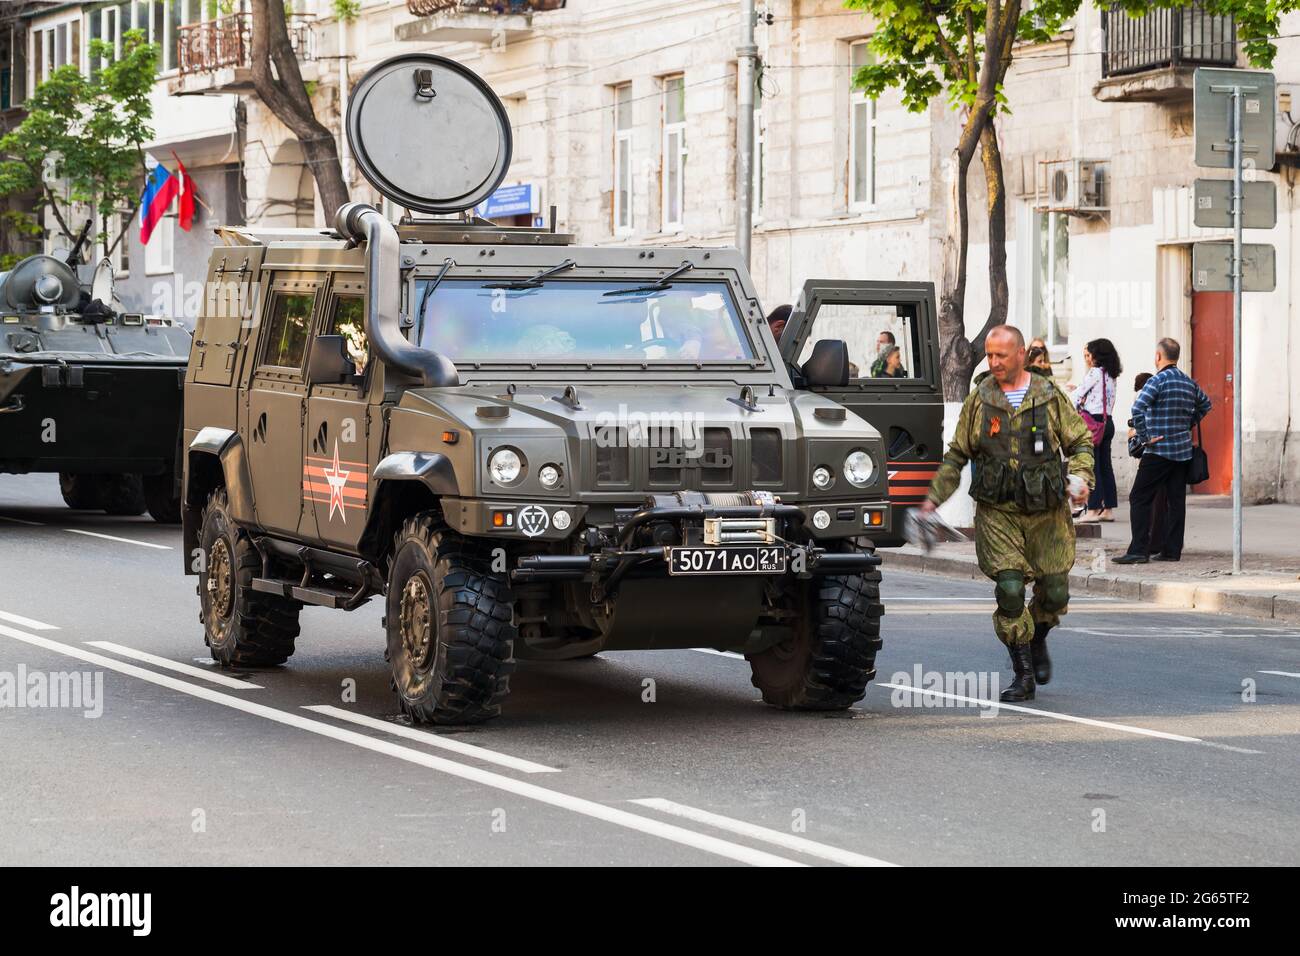 Sewastopol, Krim - 5. Mai 2018: Iveco LMV Militärwagen steht auf einer Straße. Dieses leichte Mehrzweckfahrzeug ist ein taktisches Allradantriebfahrzeug, das mit Th Stockfoto